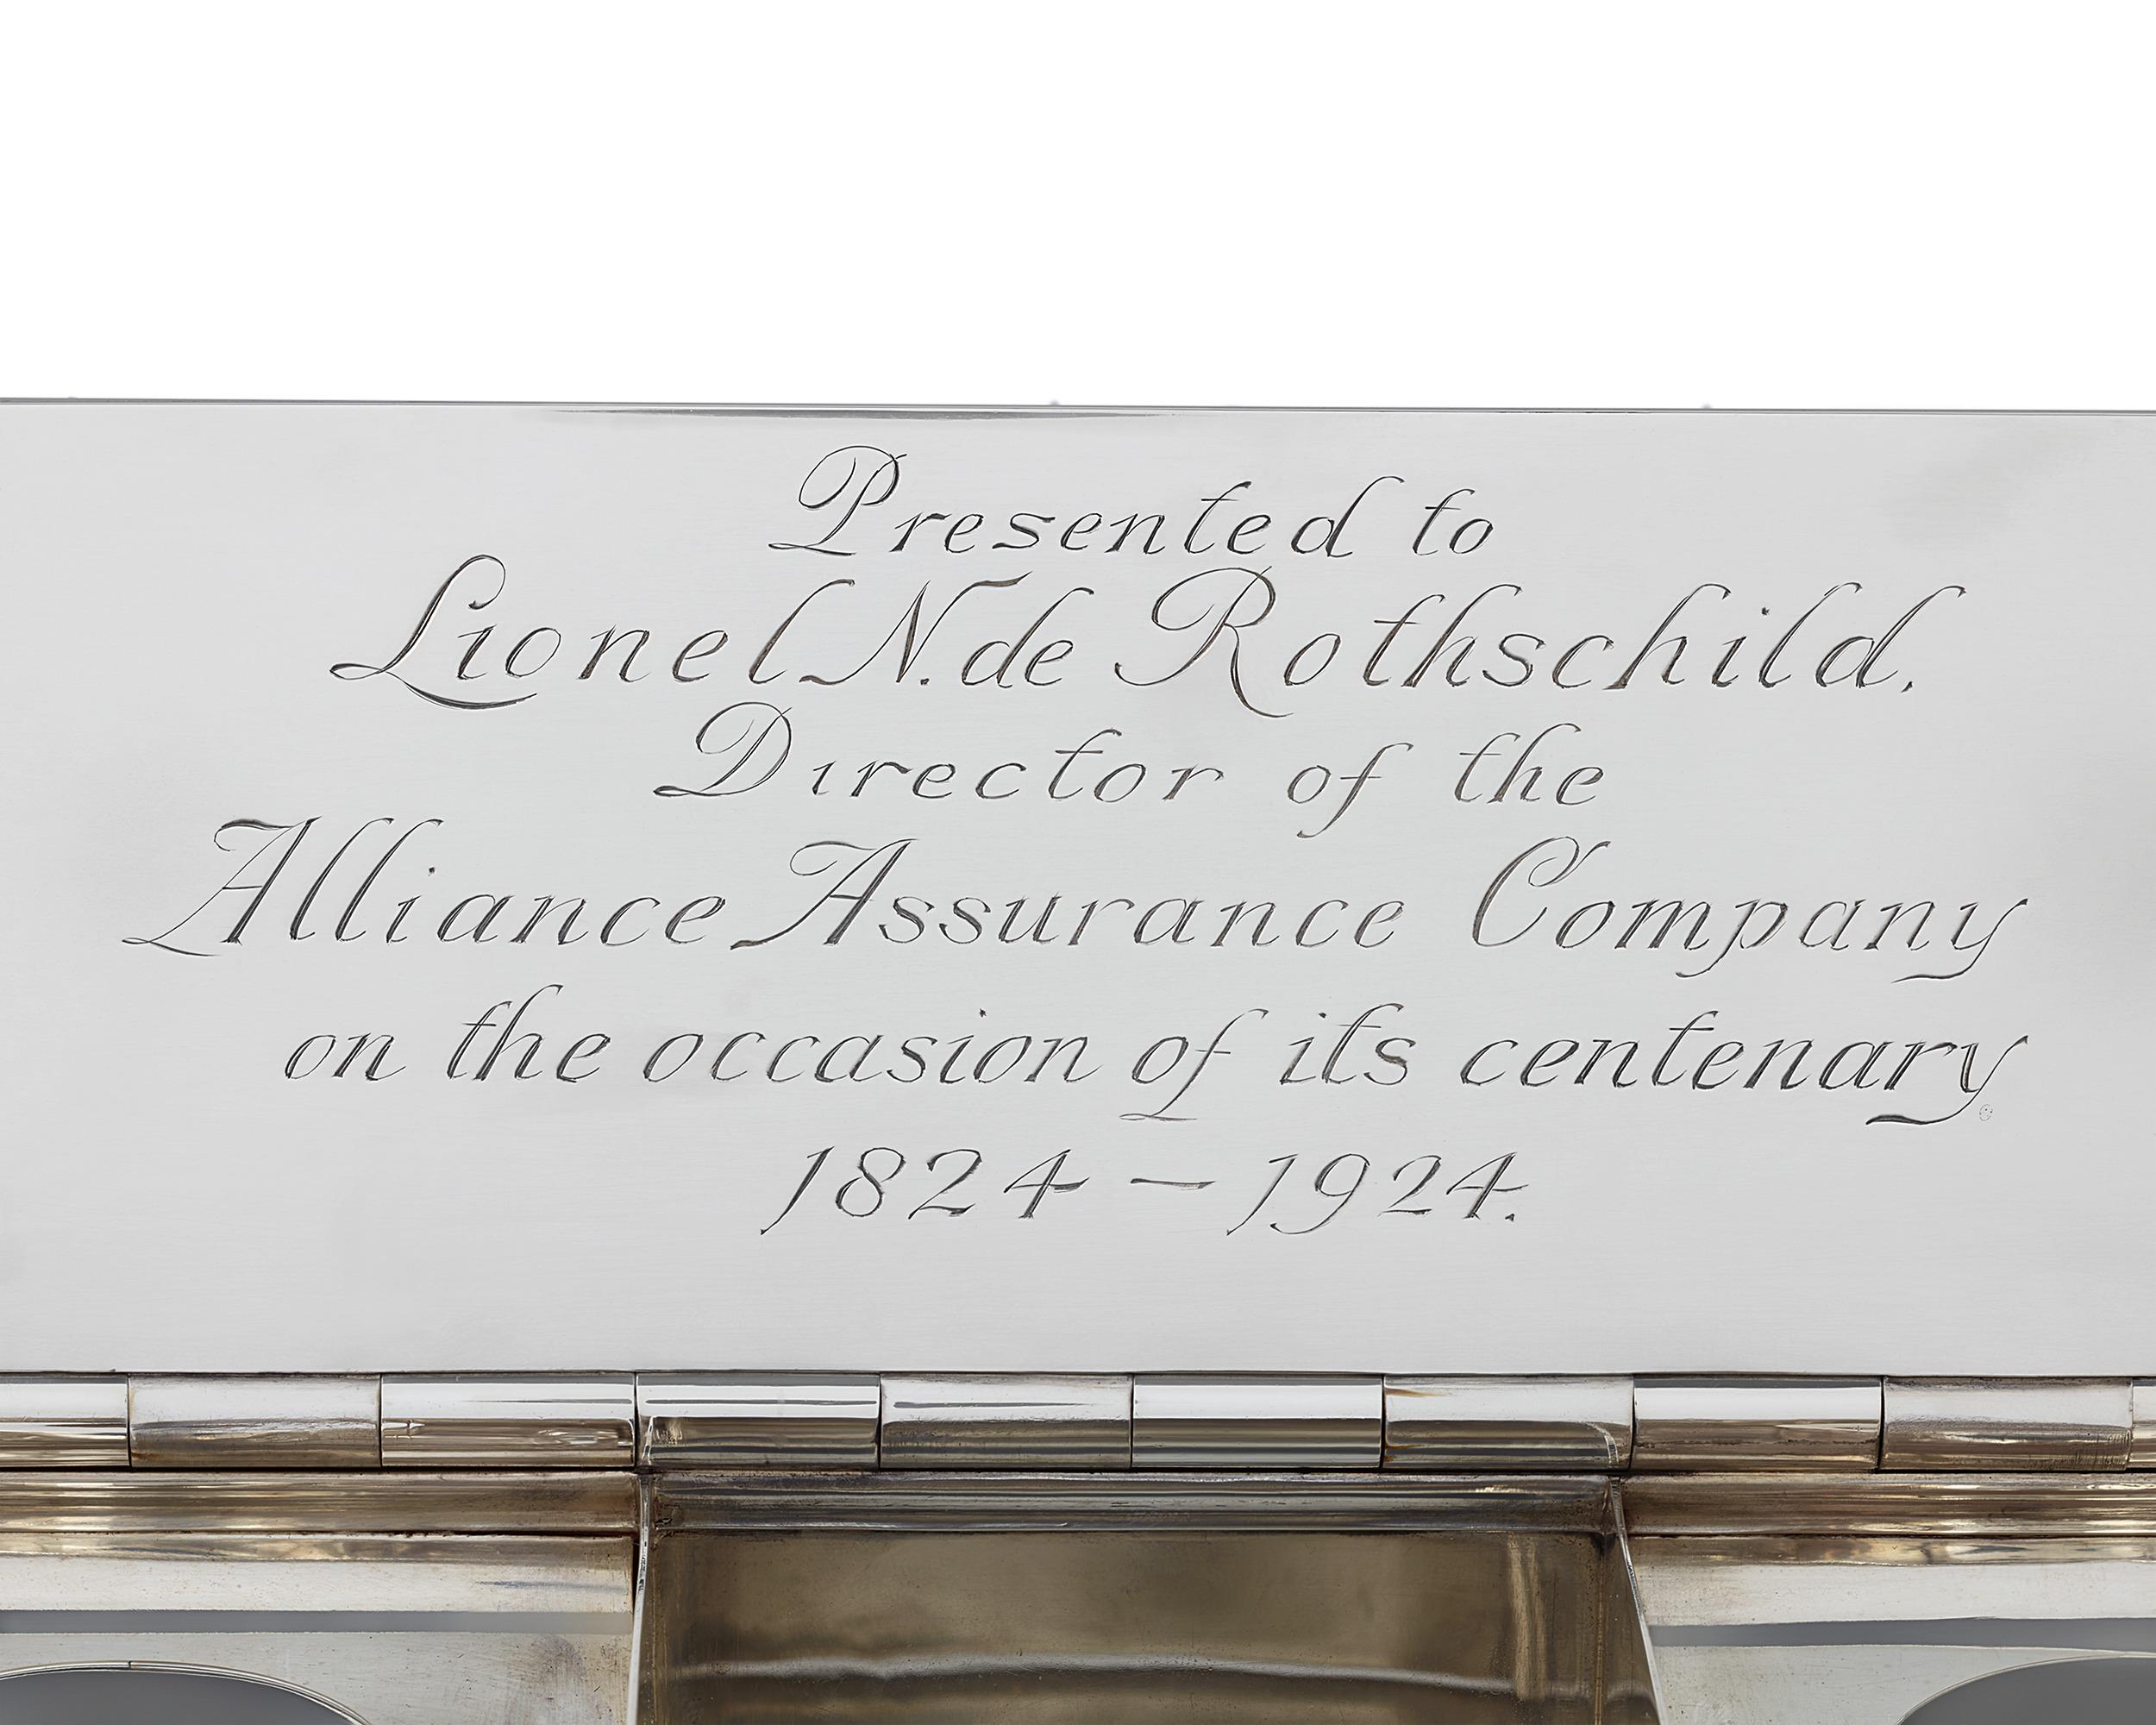 Dieses fachmännisch gefertigte George V Presentation Tintenfass wurde Lionel de Rothschild zum hundertjährigen Bestehen der Alliance Assurance Company geschenkt. Das Werk wurde von dem bekannten Londoner Silberschmied Charles Comyns geschmiedet. Die